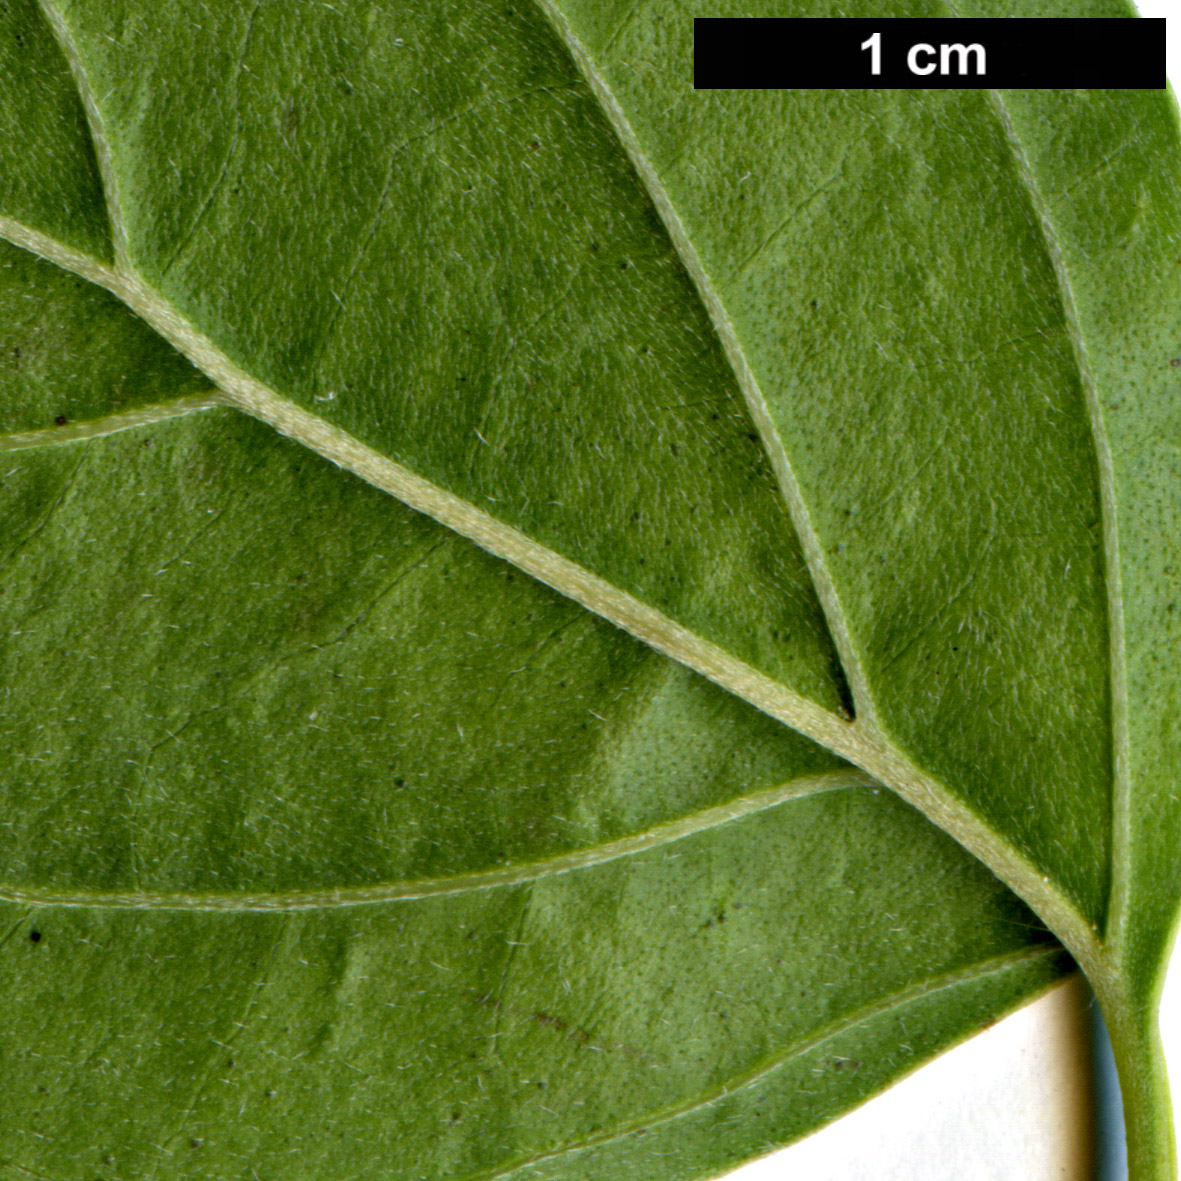 High resolution image: Family: Cornaceae - Genus: Cornus - Taxon: disciflora